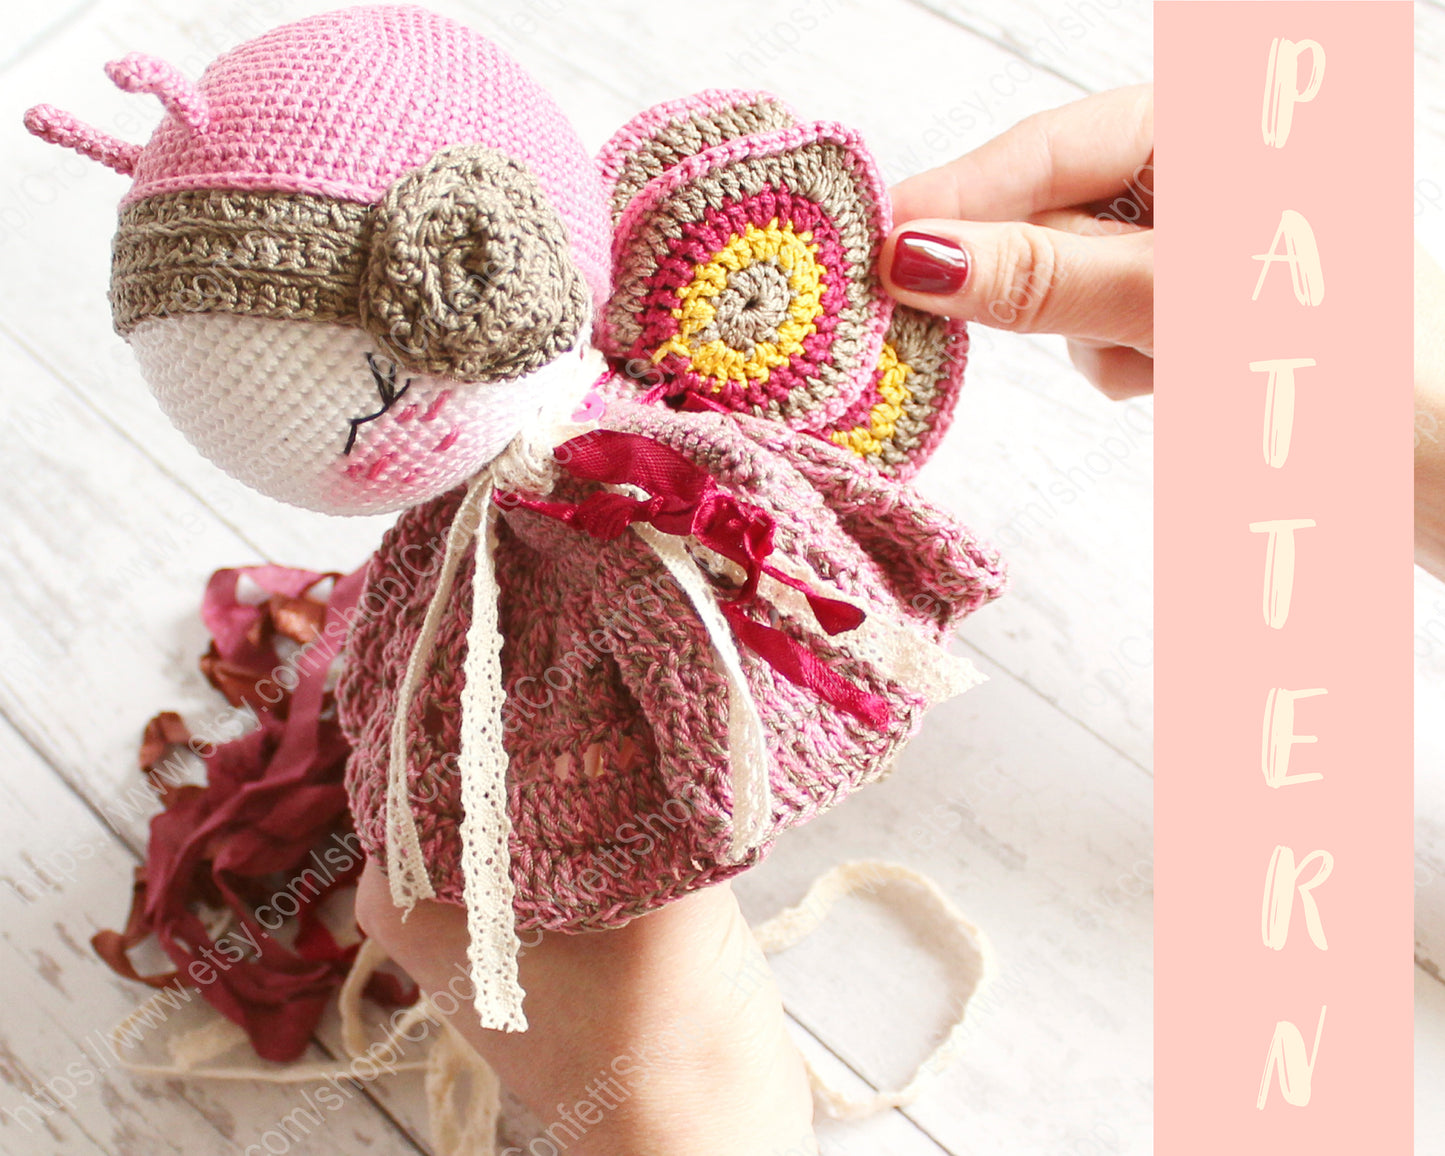 PDF PATTERN Crochet Doll, Amigurumi Butterfly, DIY Doll, Stuffed Toy 20 cm / 7.8", Crochet Gift Idea